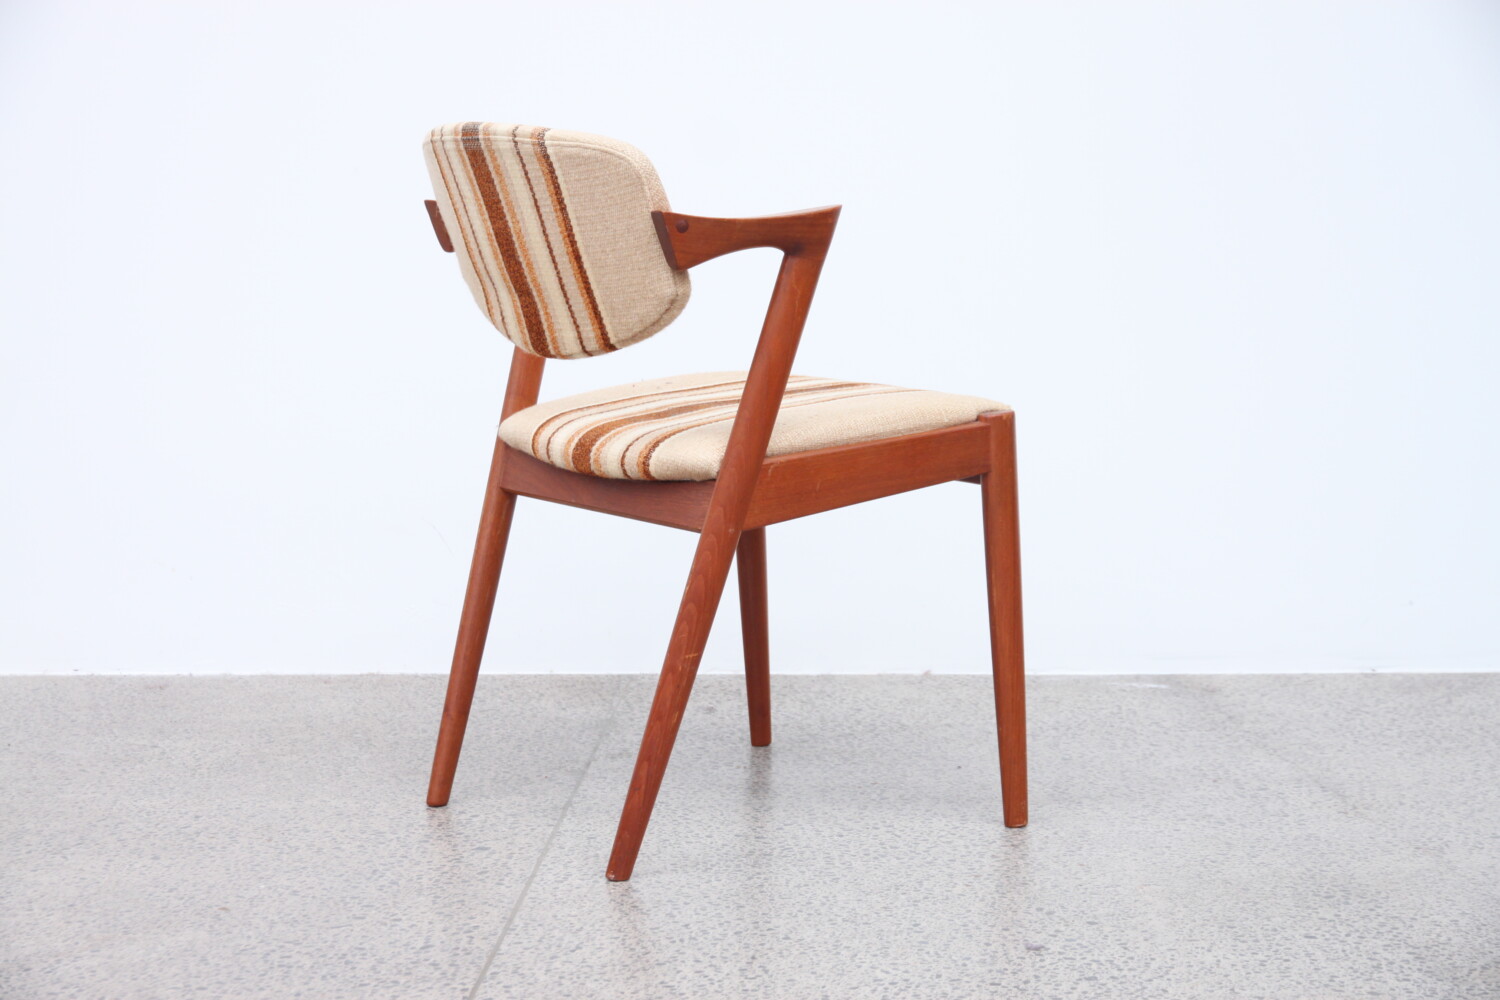 Z Chair by Kai Kristiansen sold